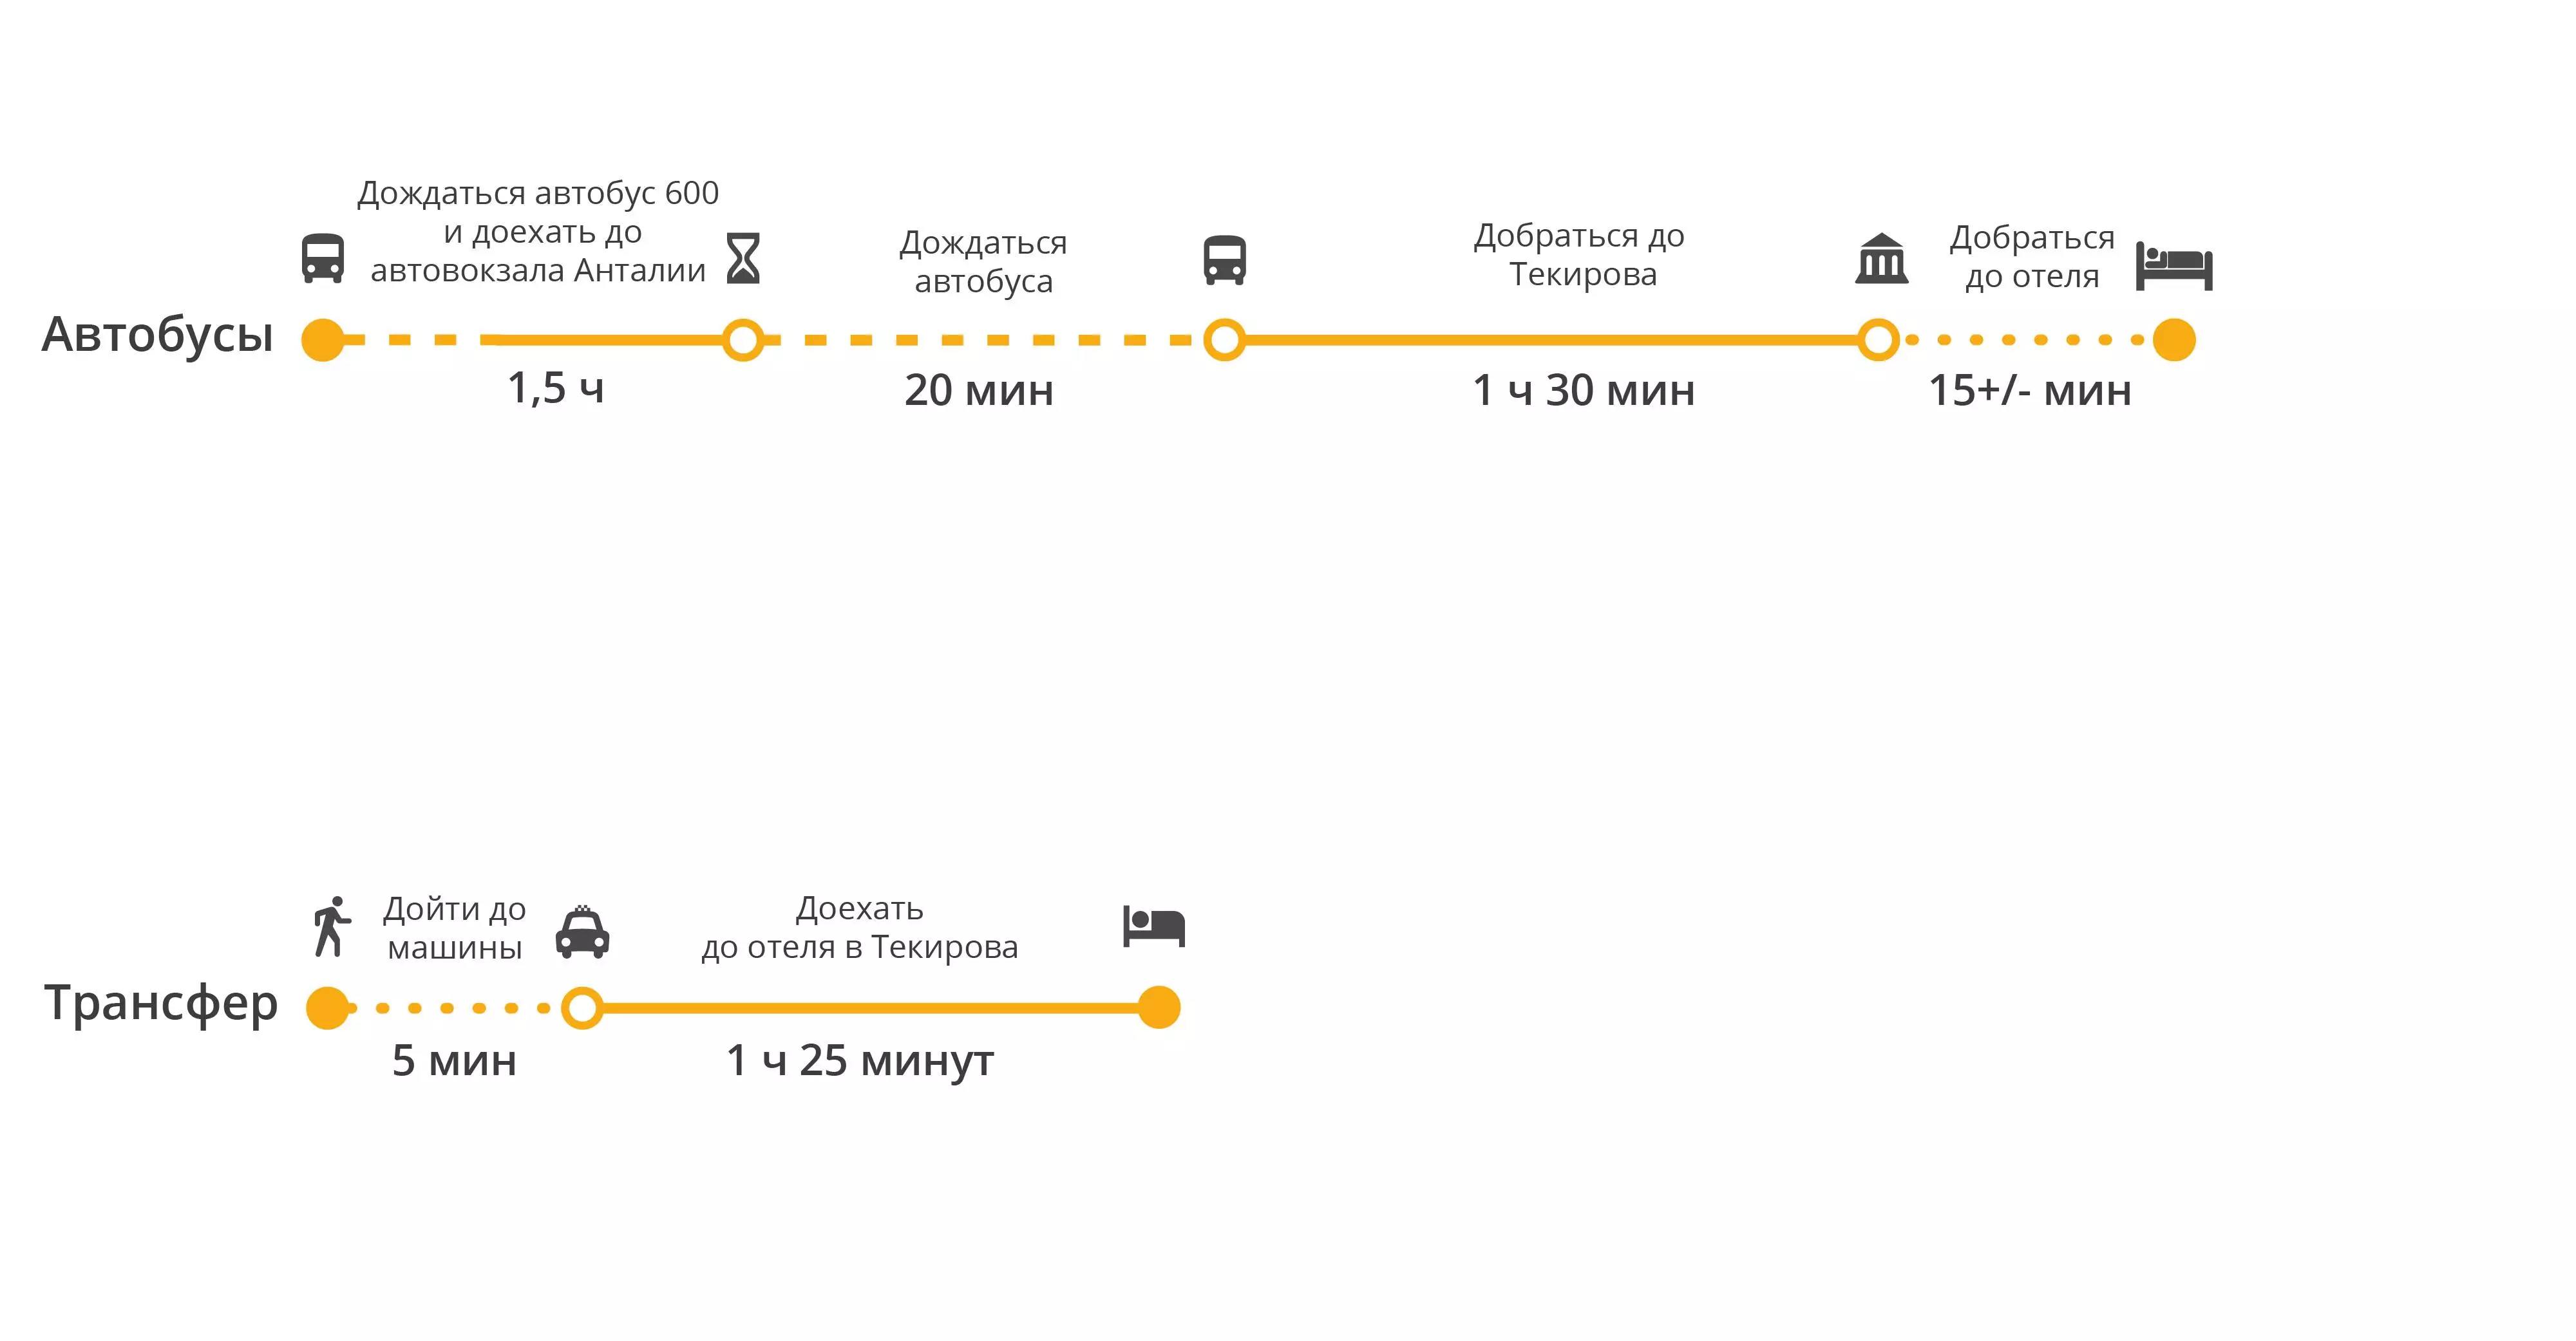 Аэропорт риги: как добраться до центра города рига: доехать на автобусе, такси